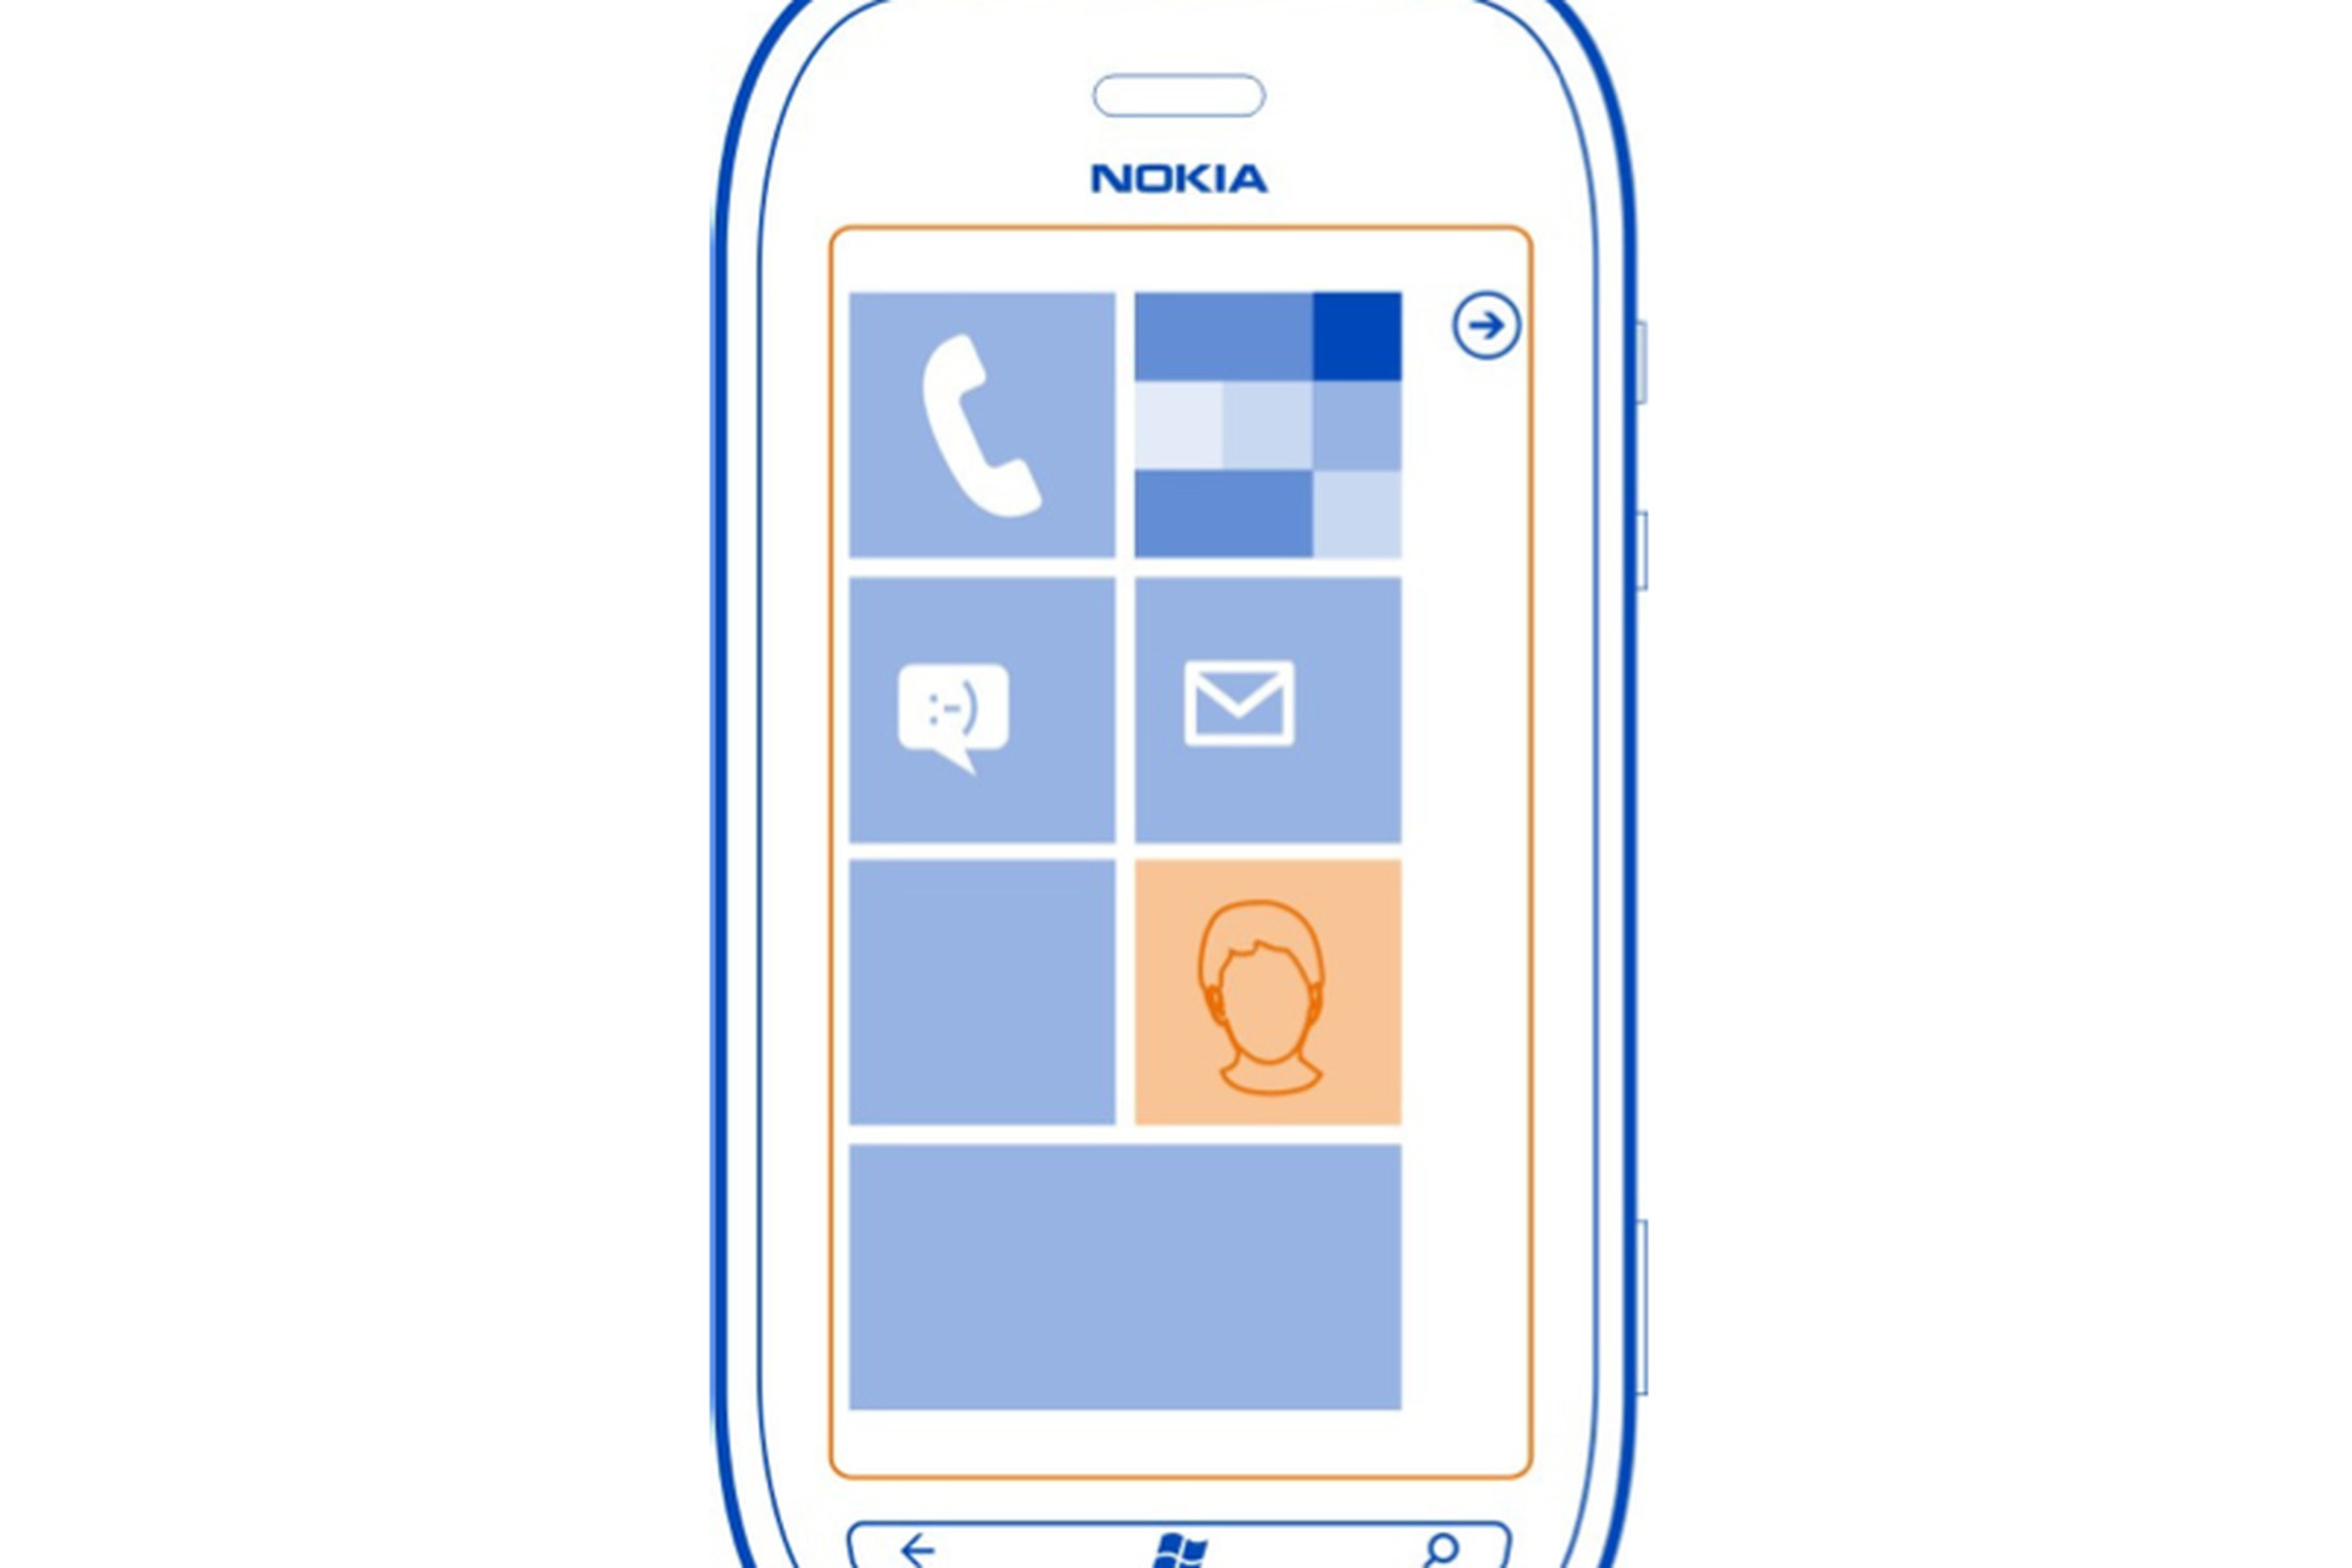 Nokia Lumia 710 manual image 800